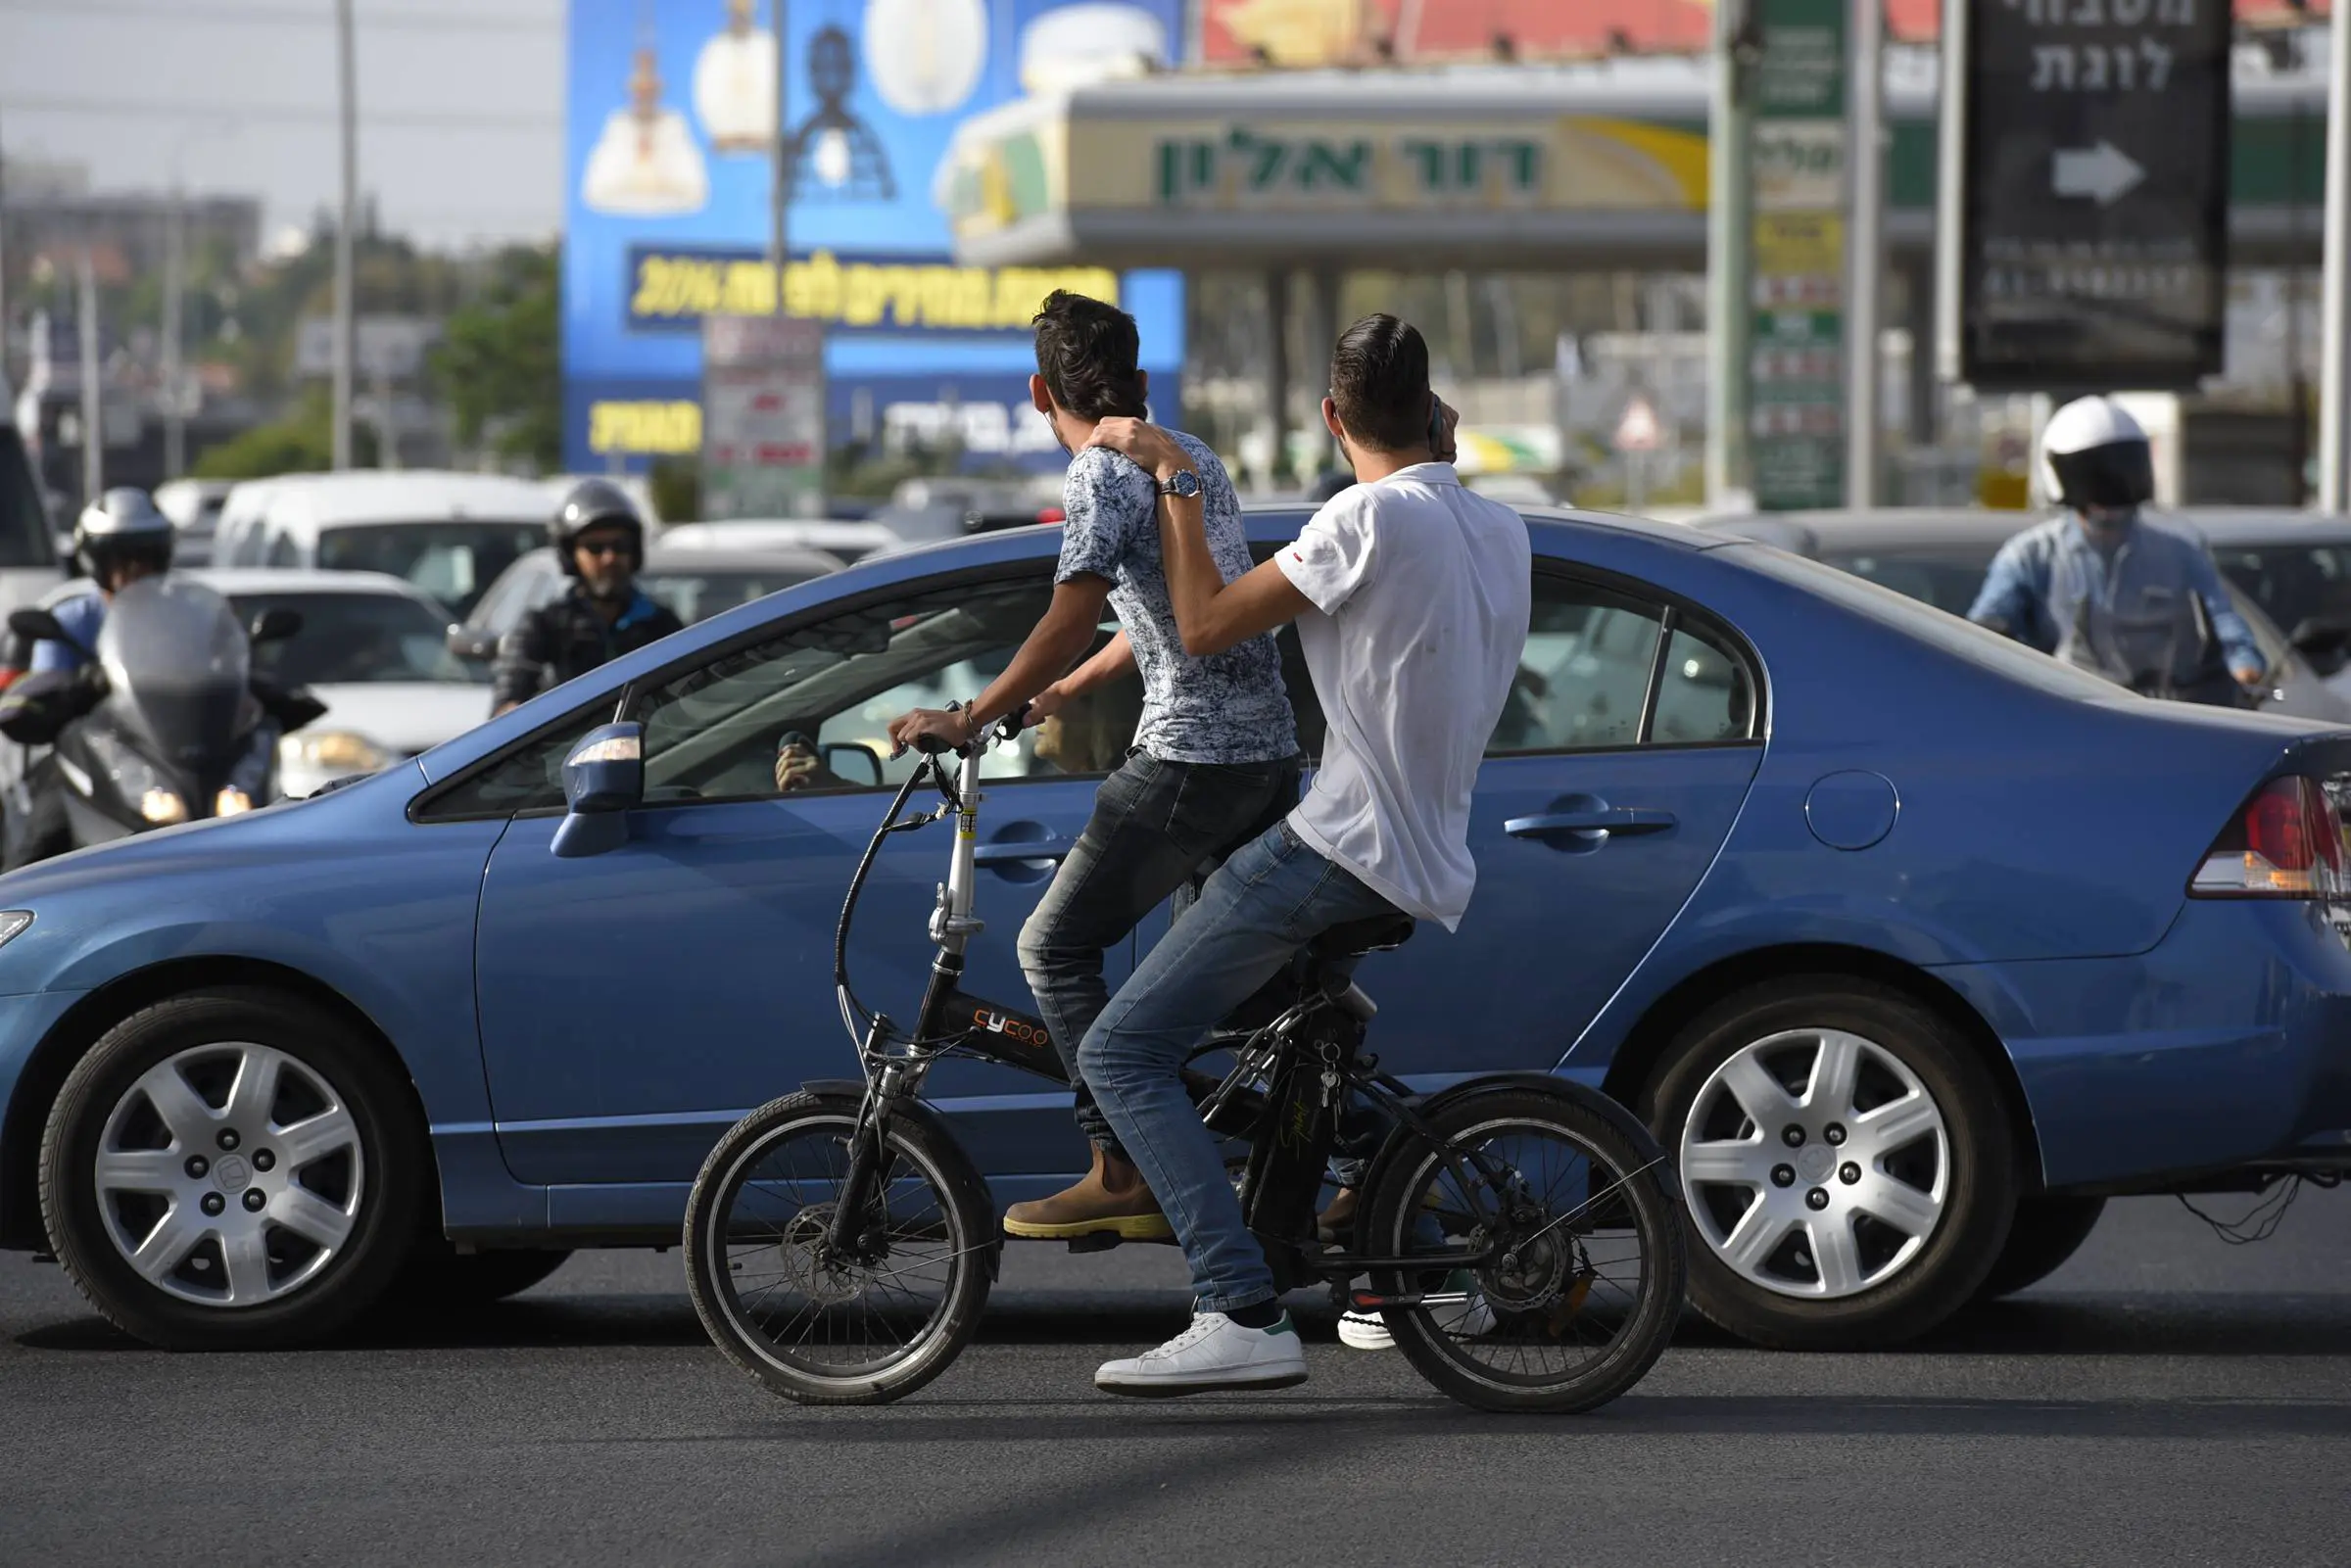 אופניים חשמליים, רמת גן. מאי 2016